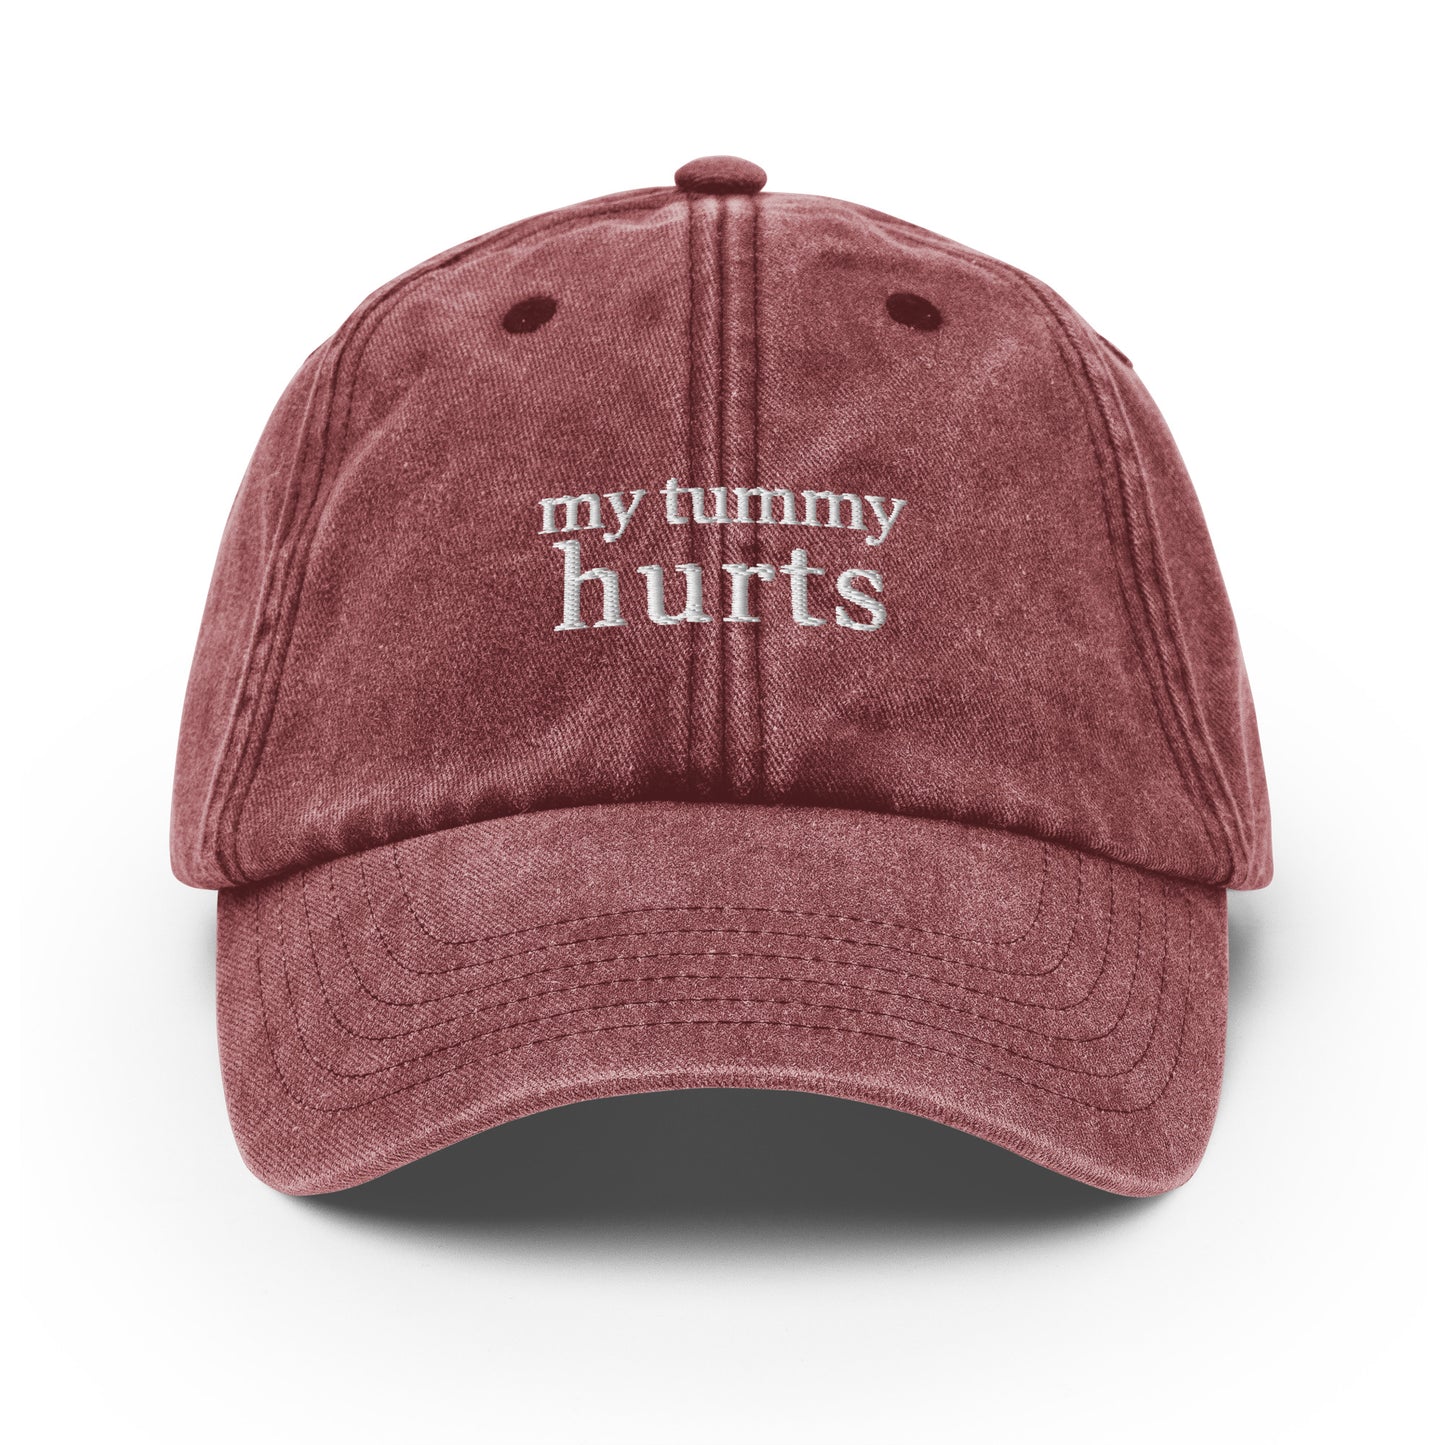 my tummy hurts Hat